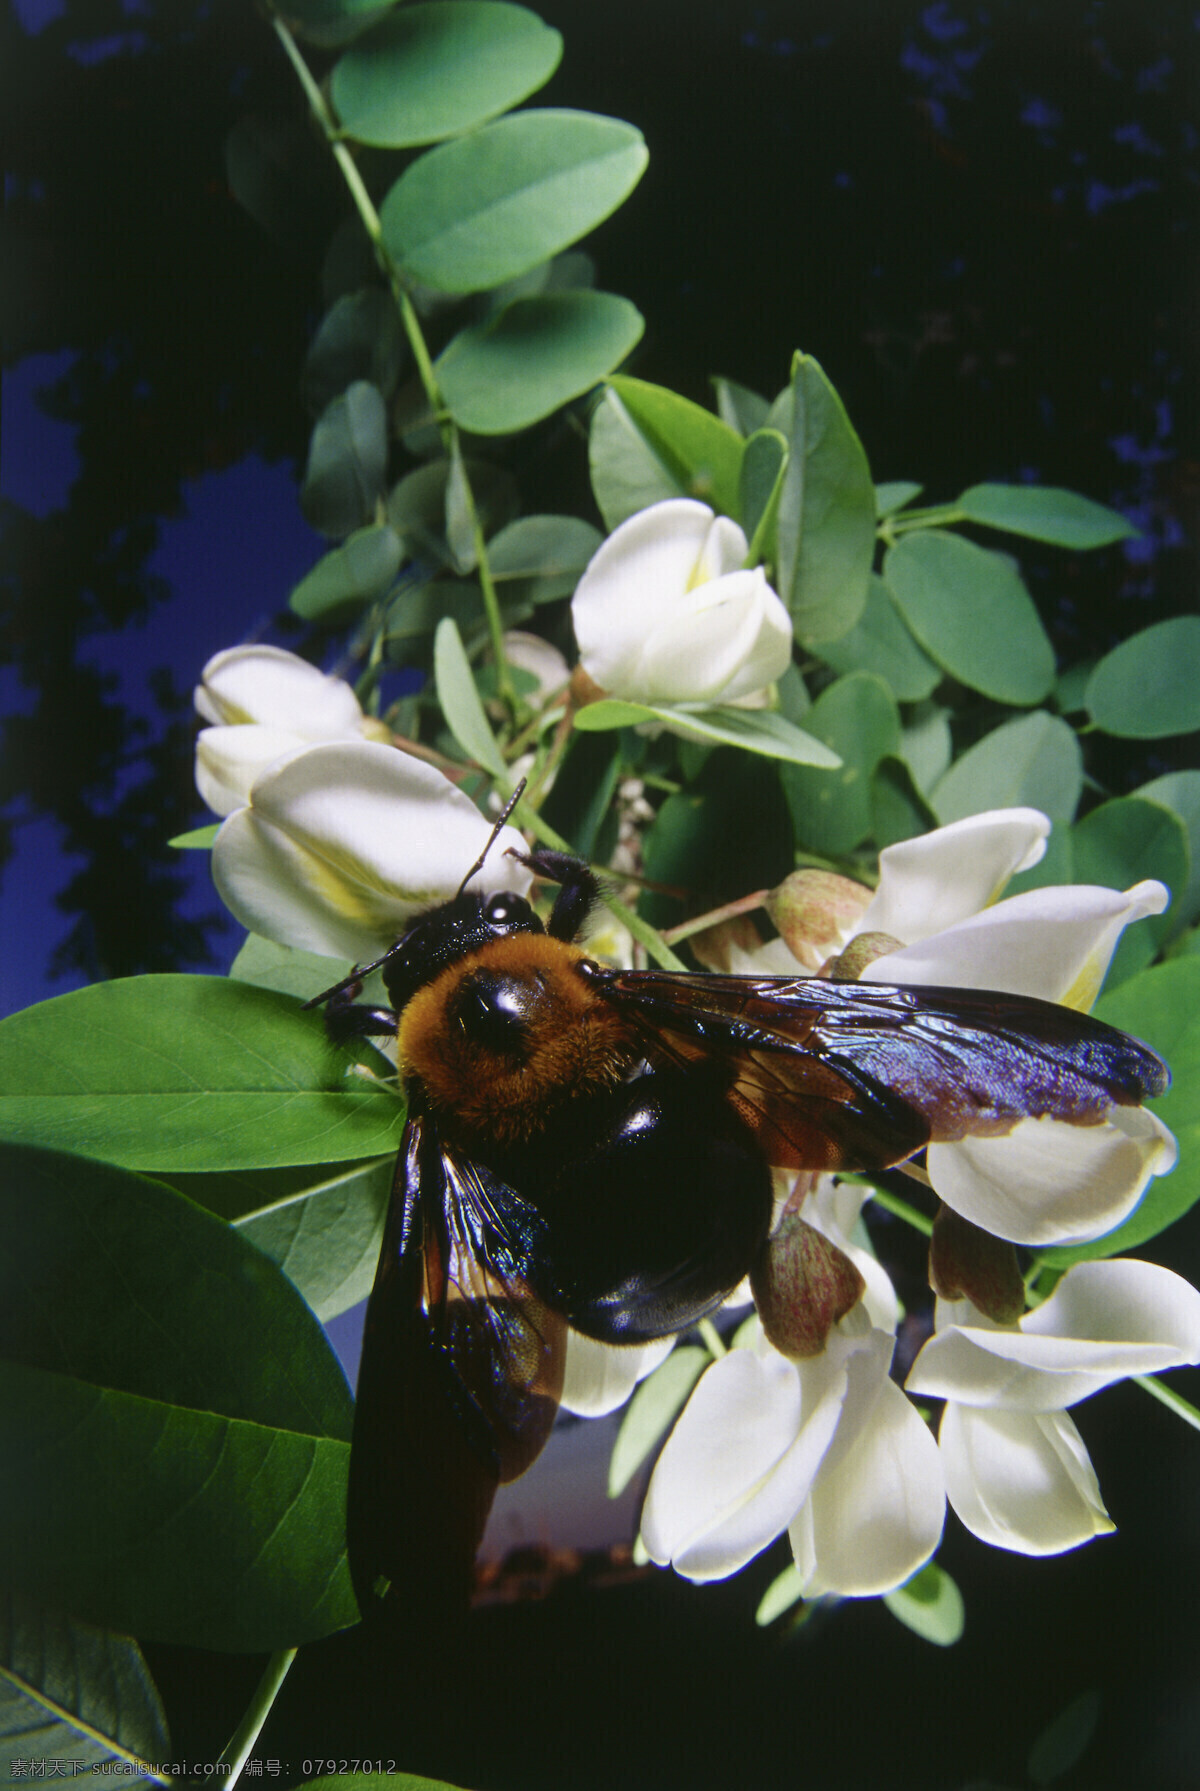 正在 采 蜜 蜜蜂 小蜜蜂 采蜜 蜜蜂特写 美丽鲜花 花丛 花朵 动物世界 昆虫世界 花草树木 生态环境 生物世界 野外 自然界 自然生物 自然生态 高清图片 自然 植物 户外